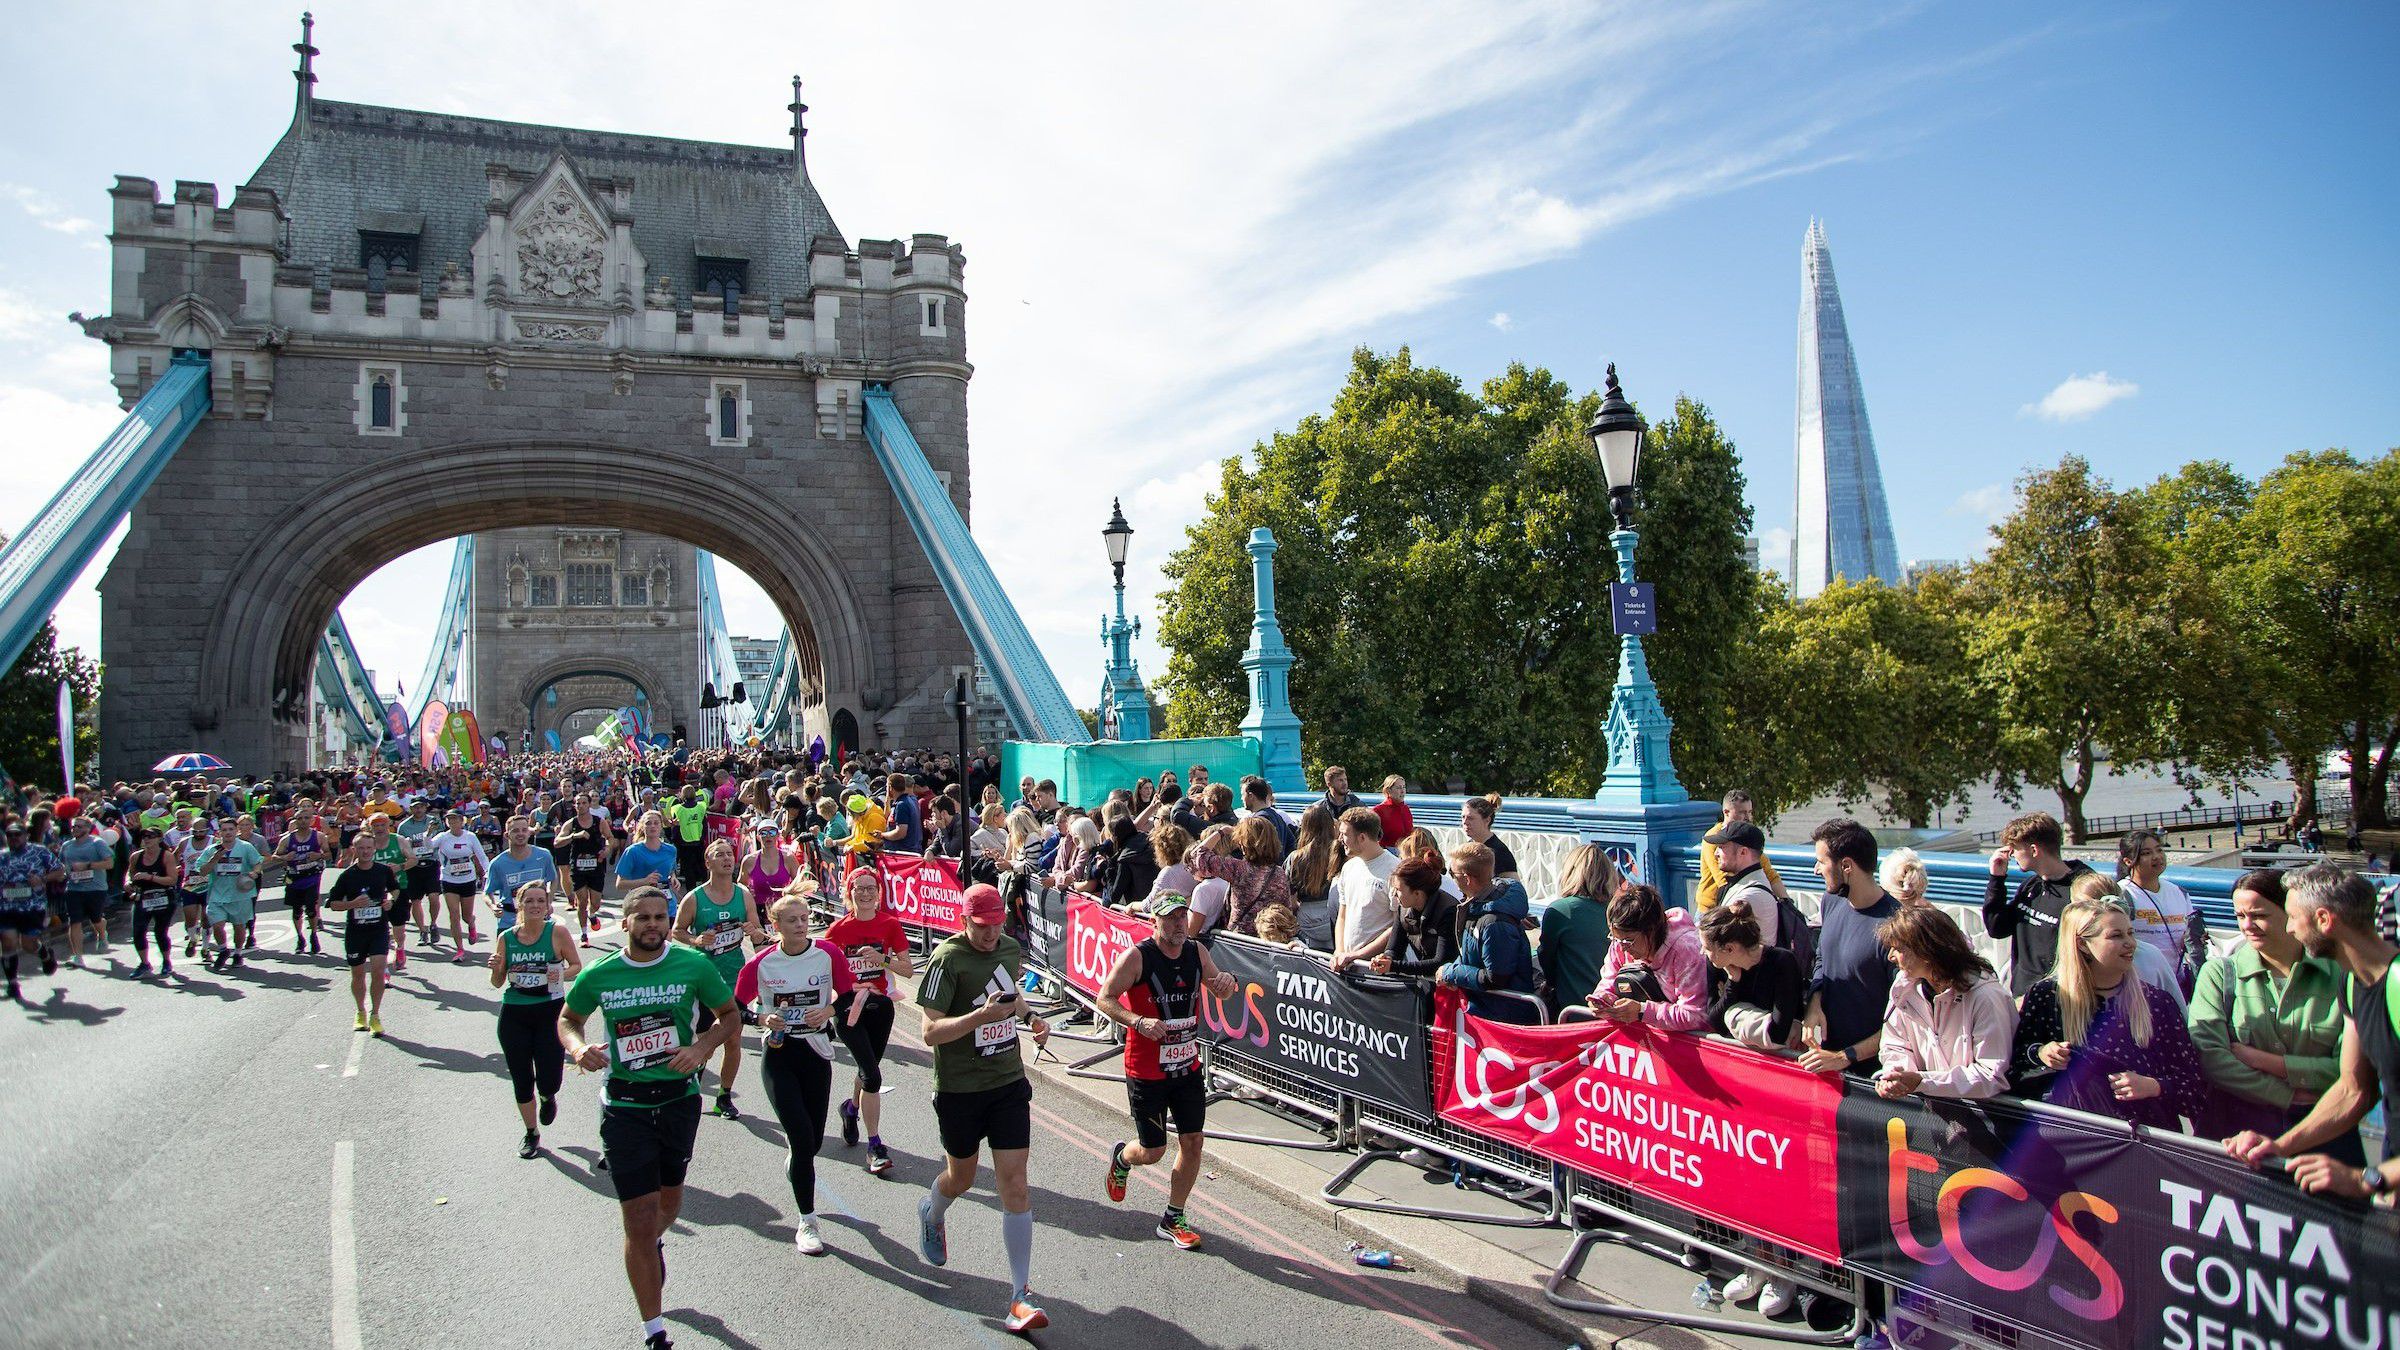 Fotó: TCS London Marathon/Twitter